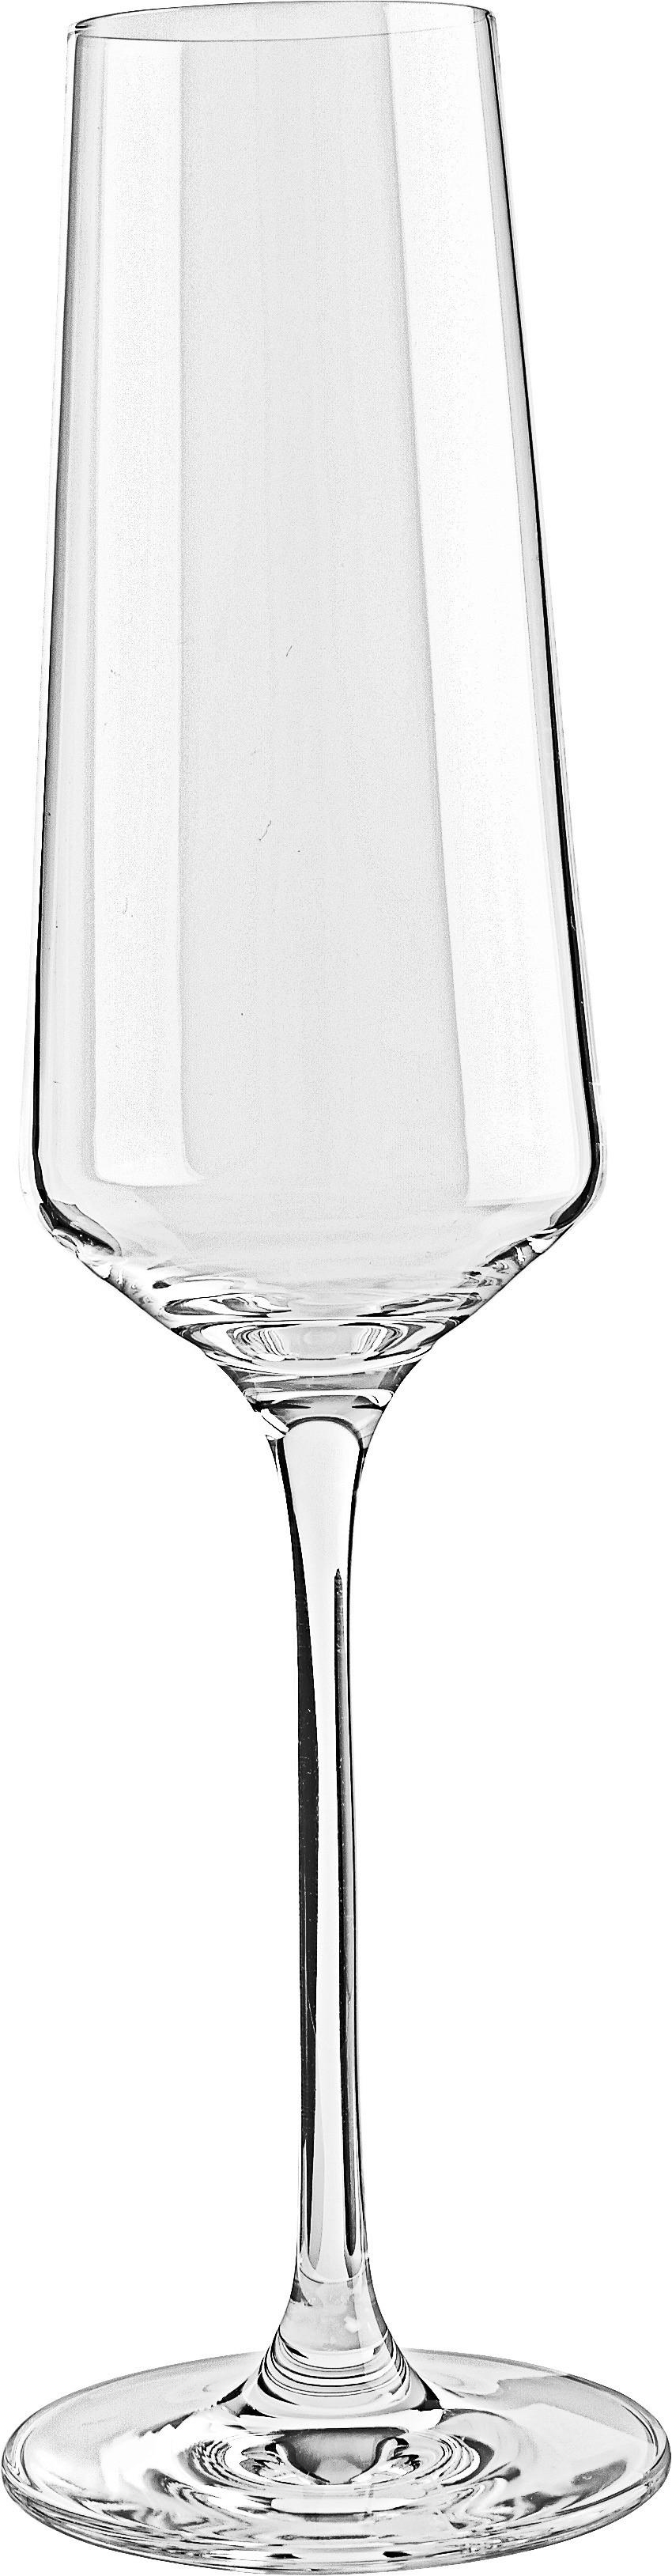 SEKTGLAS 280 ml  - Transparent, Design, Glas (7,20/26,00/7,20cm) - Leonardo